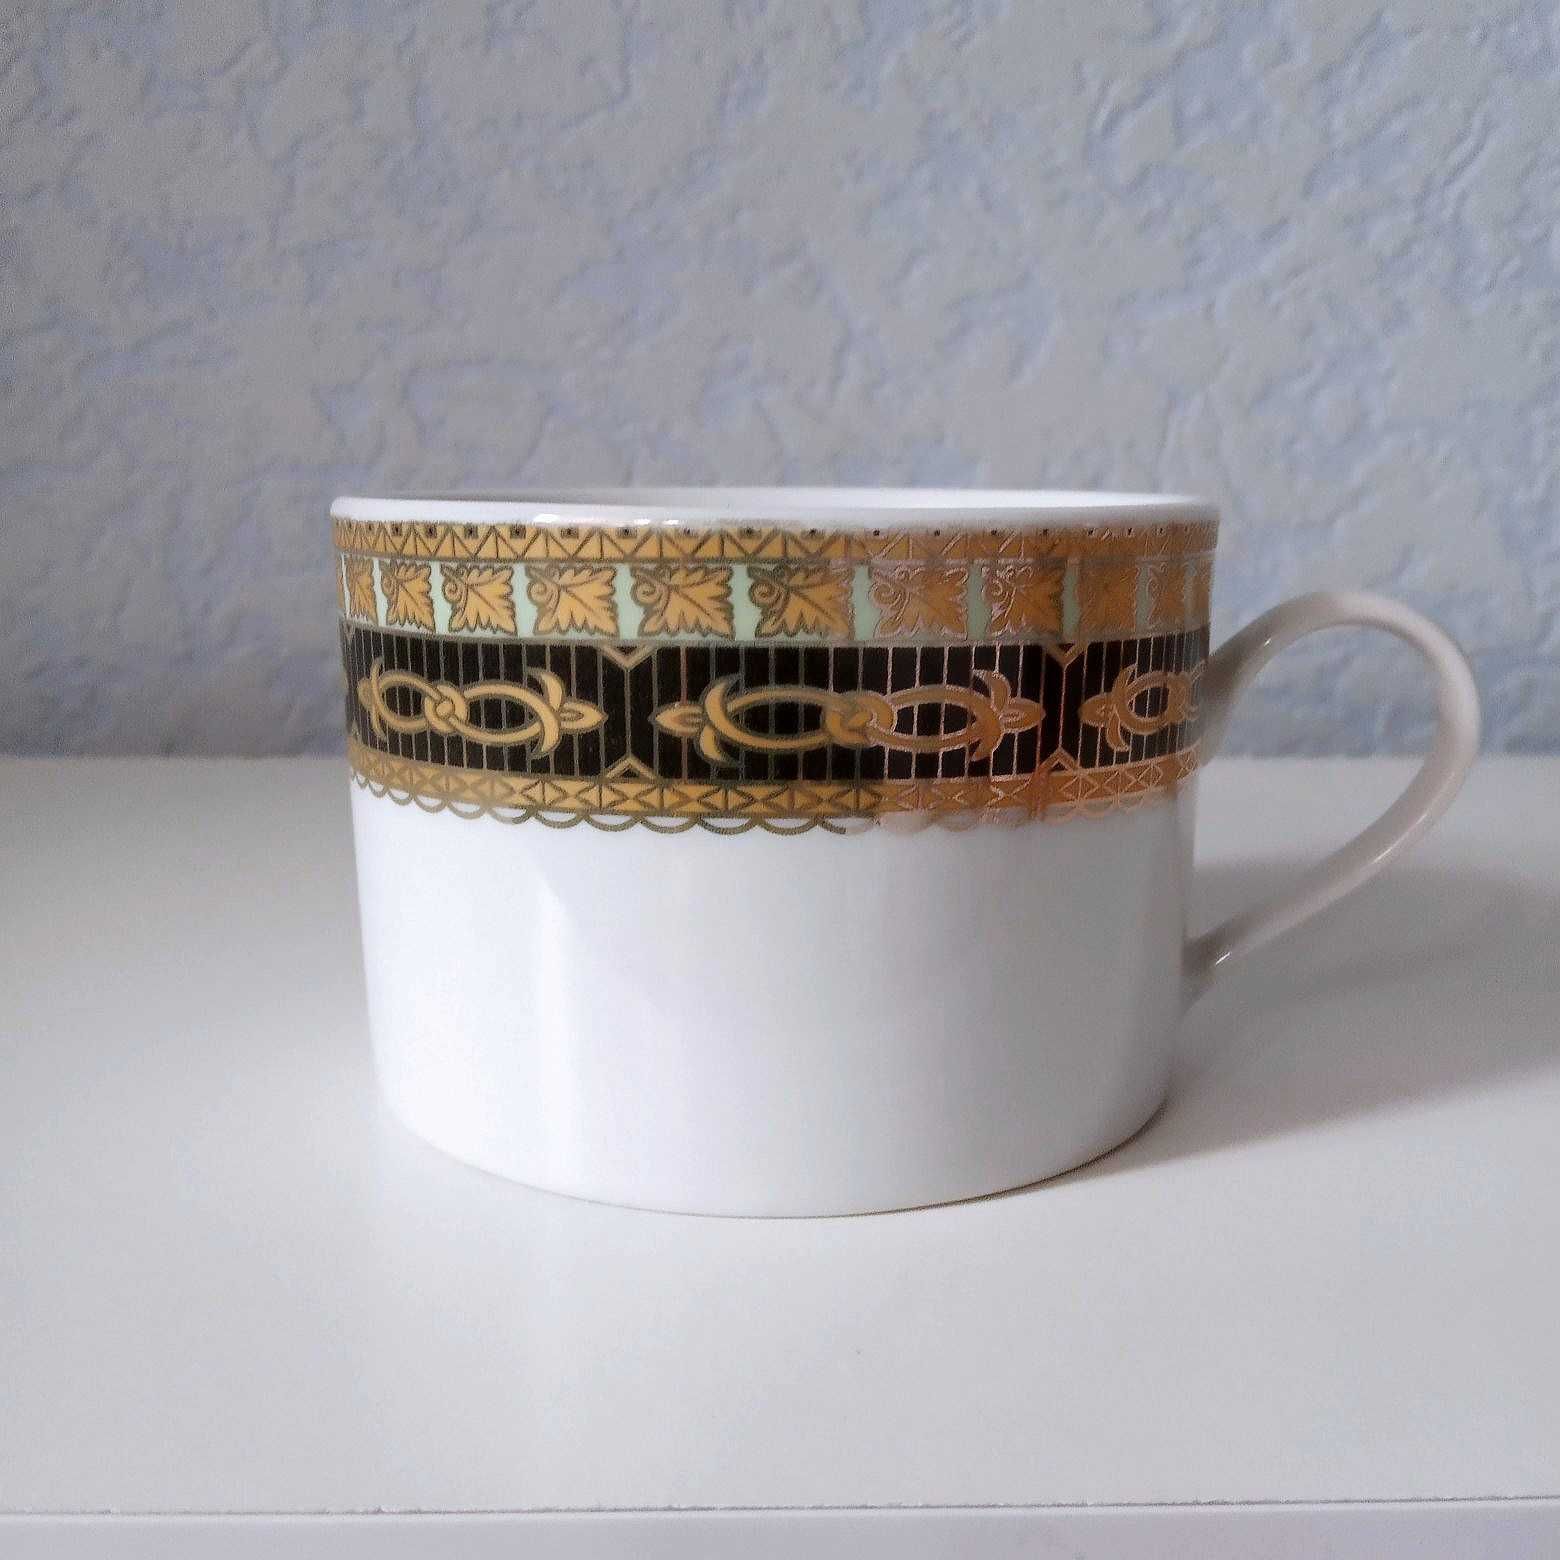 Чашки роспись золотом с клеймом жар-птица - 4шт